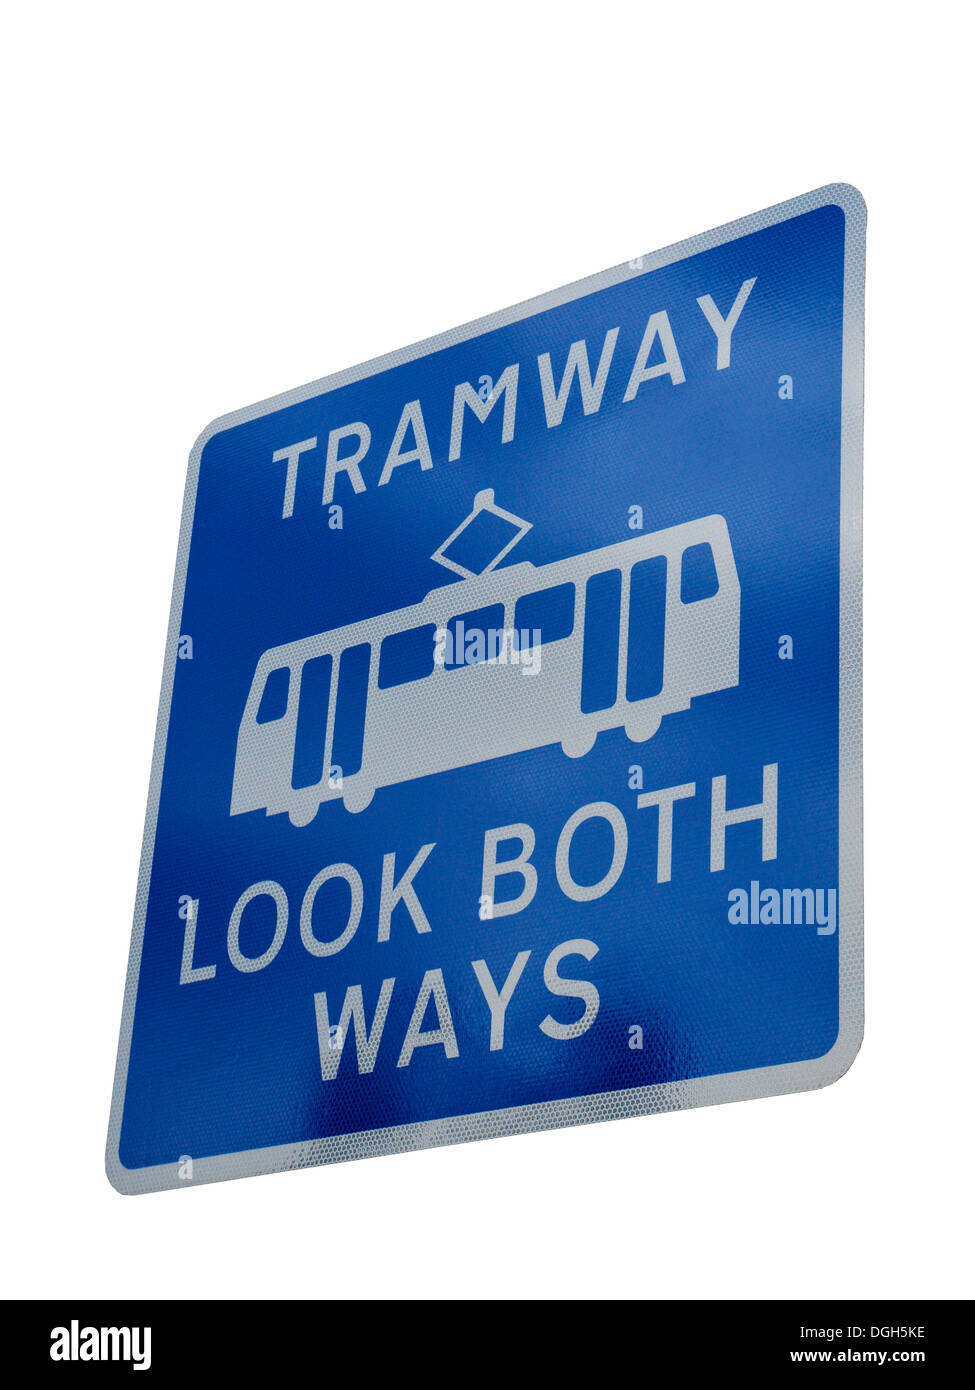 Tramway Look both ways Metrolink tram warning sign in Manchester UK Stock Photo